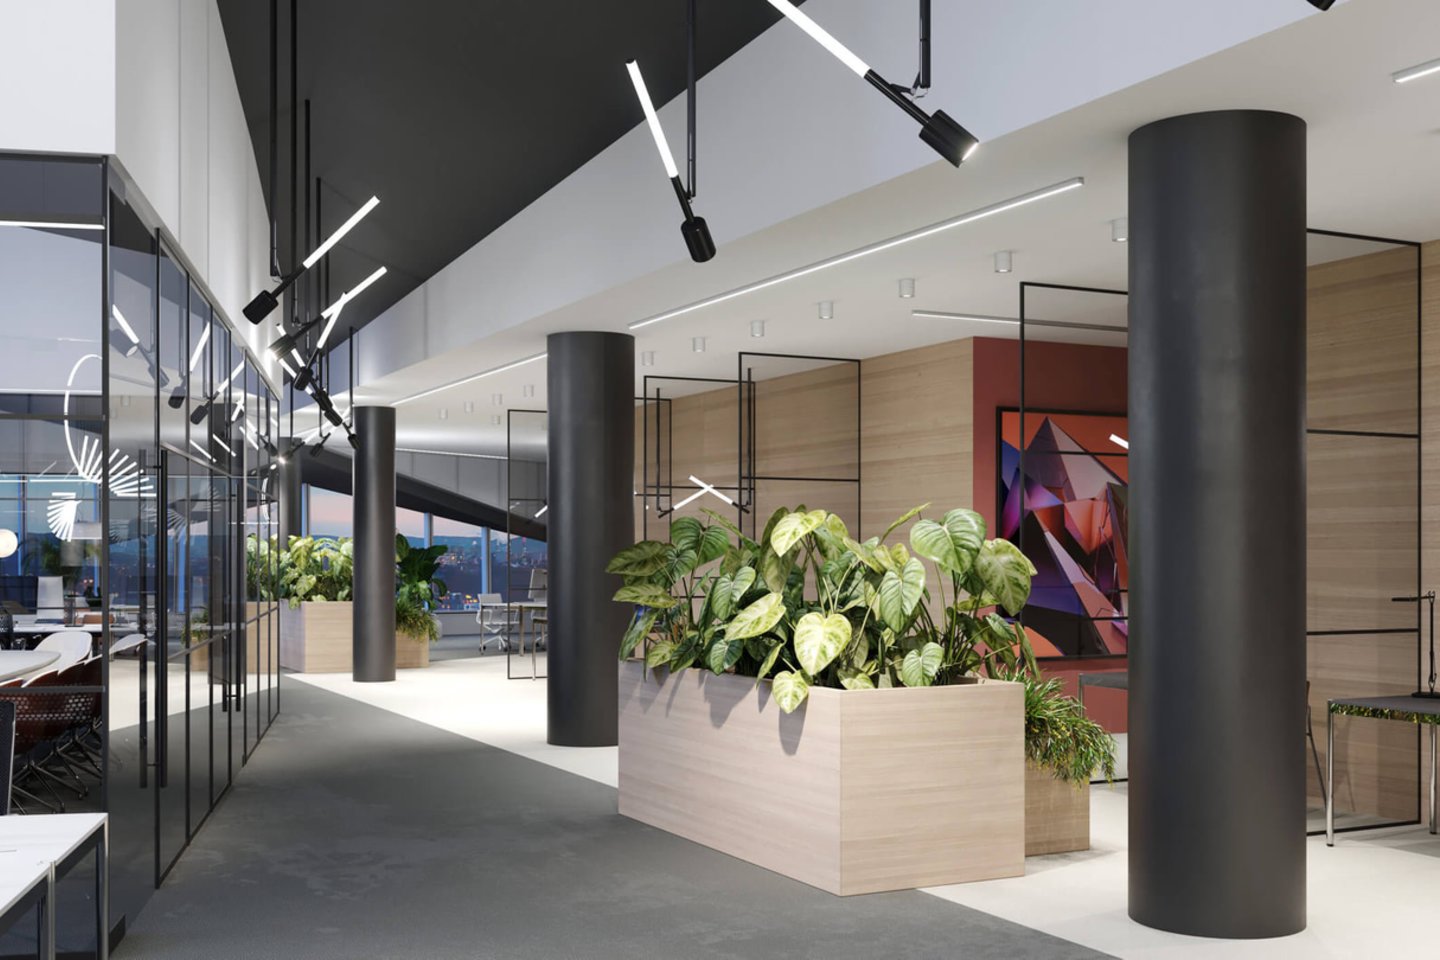 Pasaulinio garso architekto Danielio Libeskindo projektas suteiks naują veidą šalies biurų rinkai. Jo fasadas buvo stiklinamas daugiau nei metus.<br>Architekto Danielio Libeskindo projekto vizual.